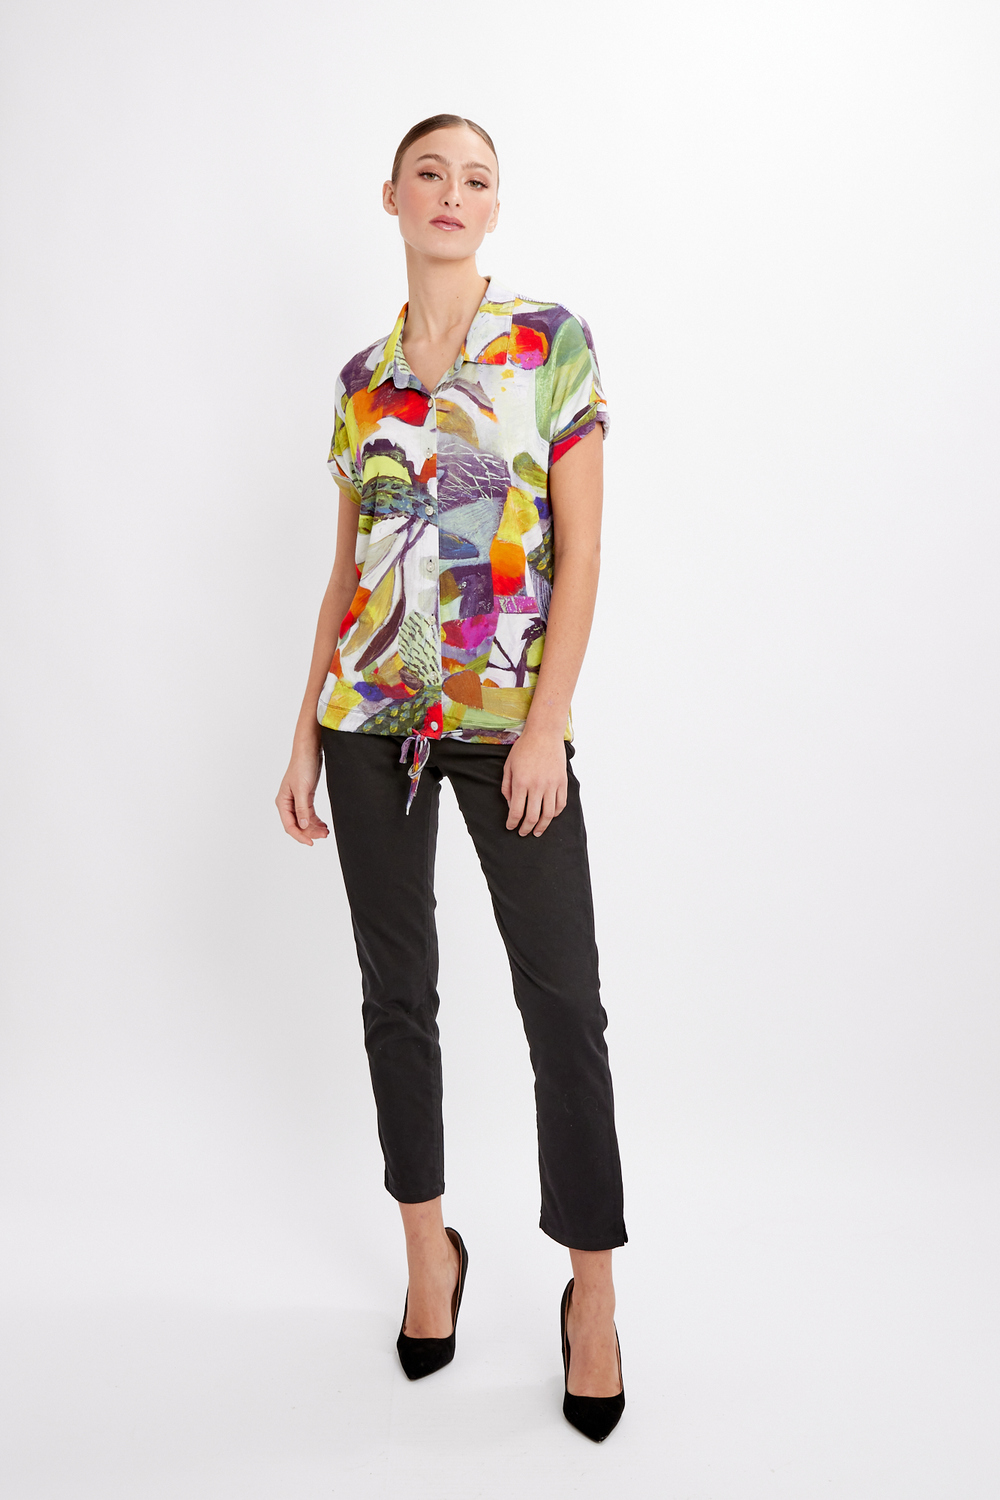 Chemise féminine à motif abstrait modèle 24693. As Sample